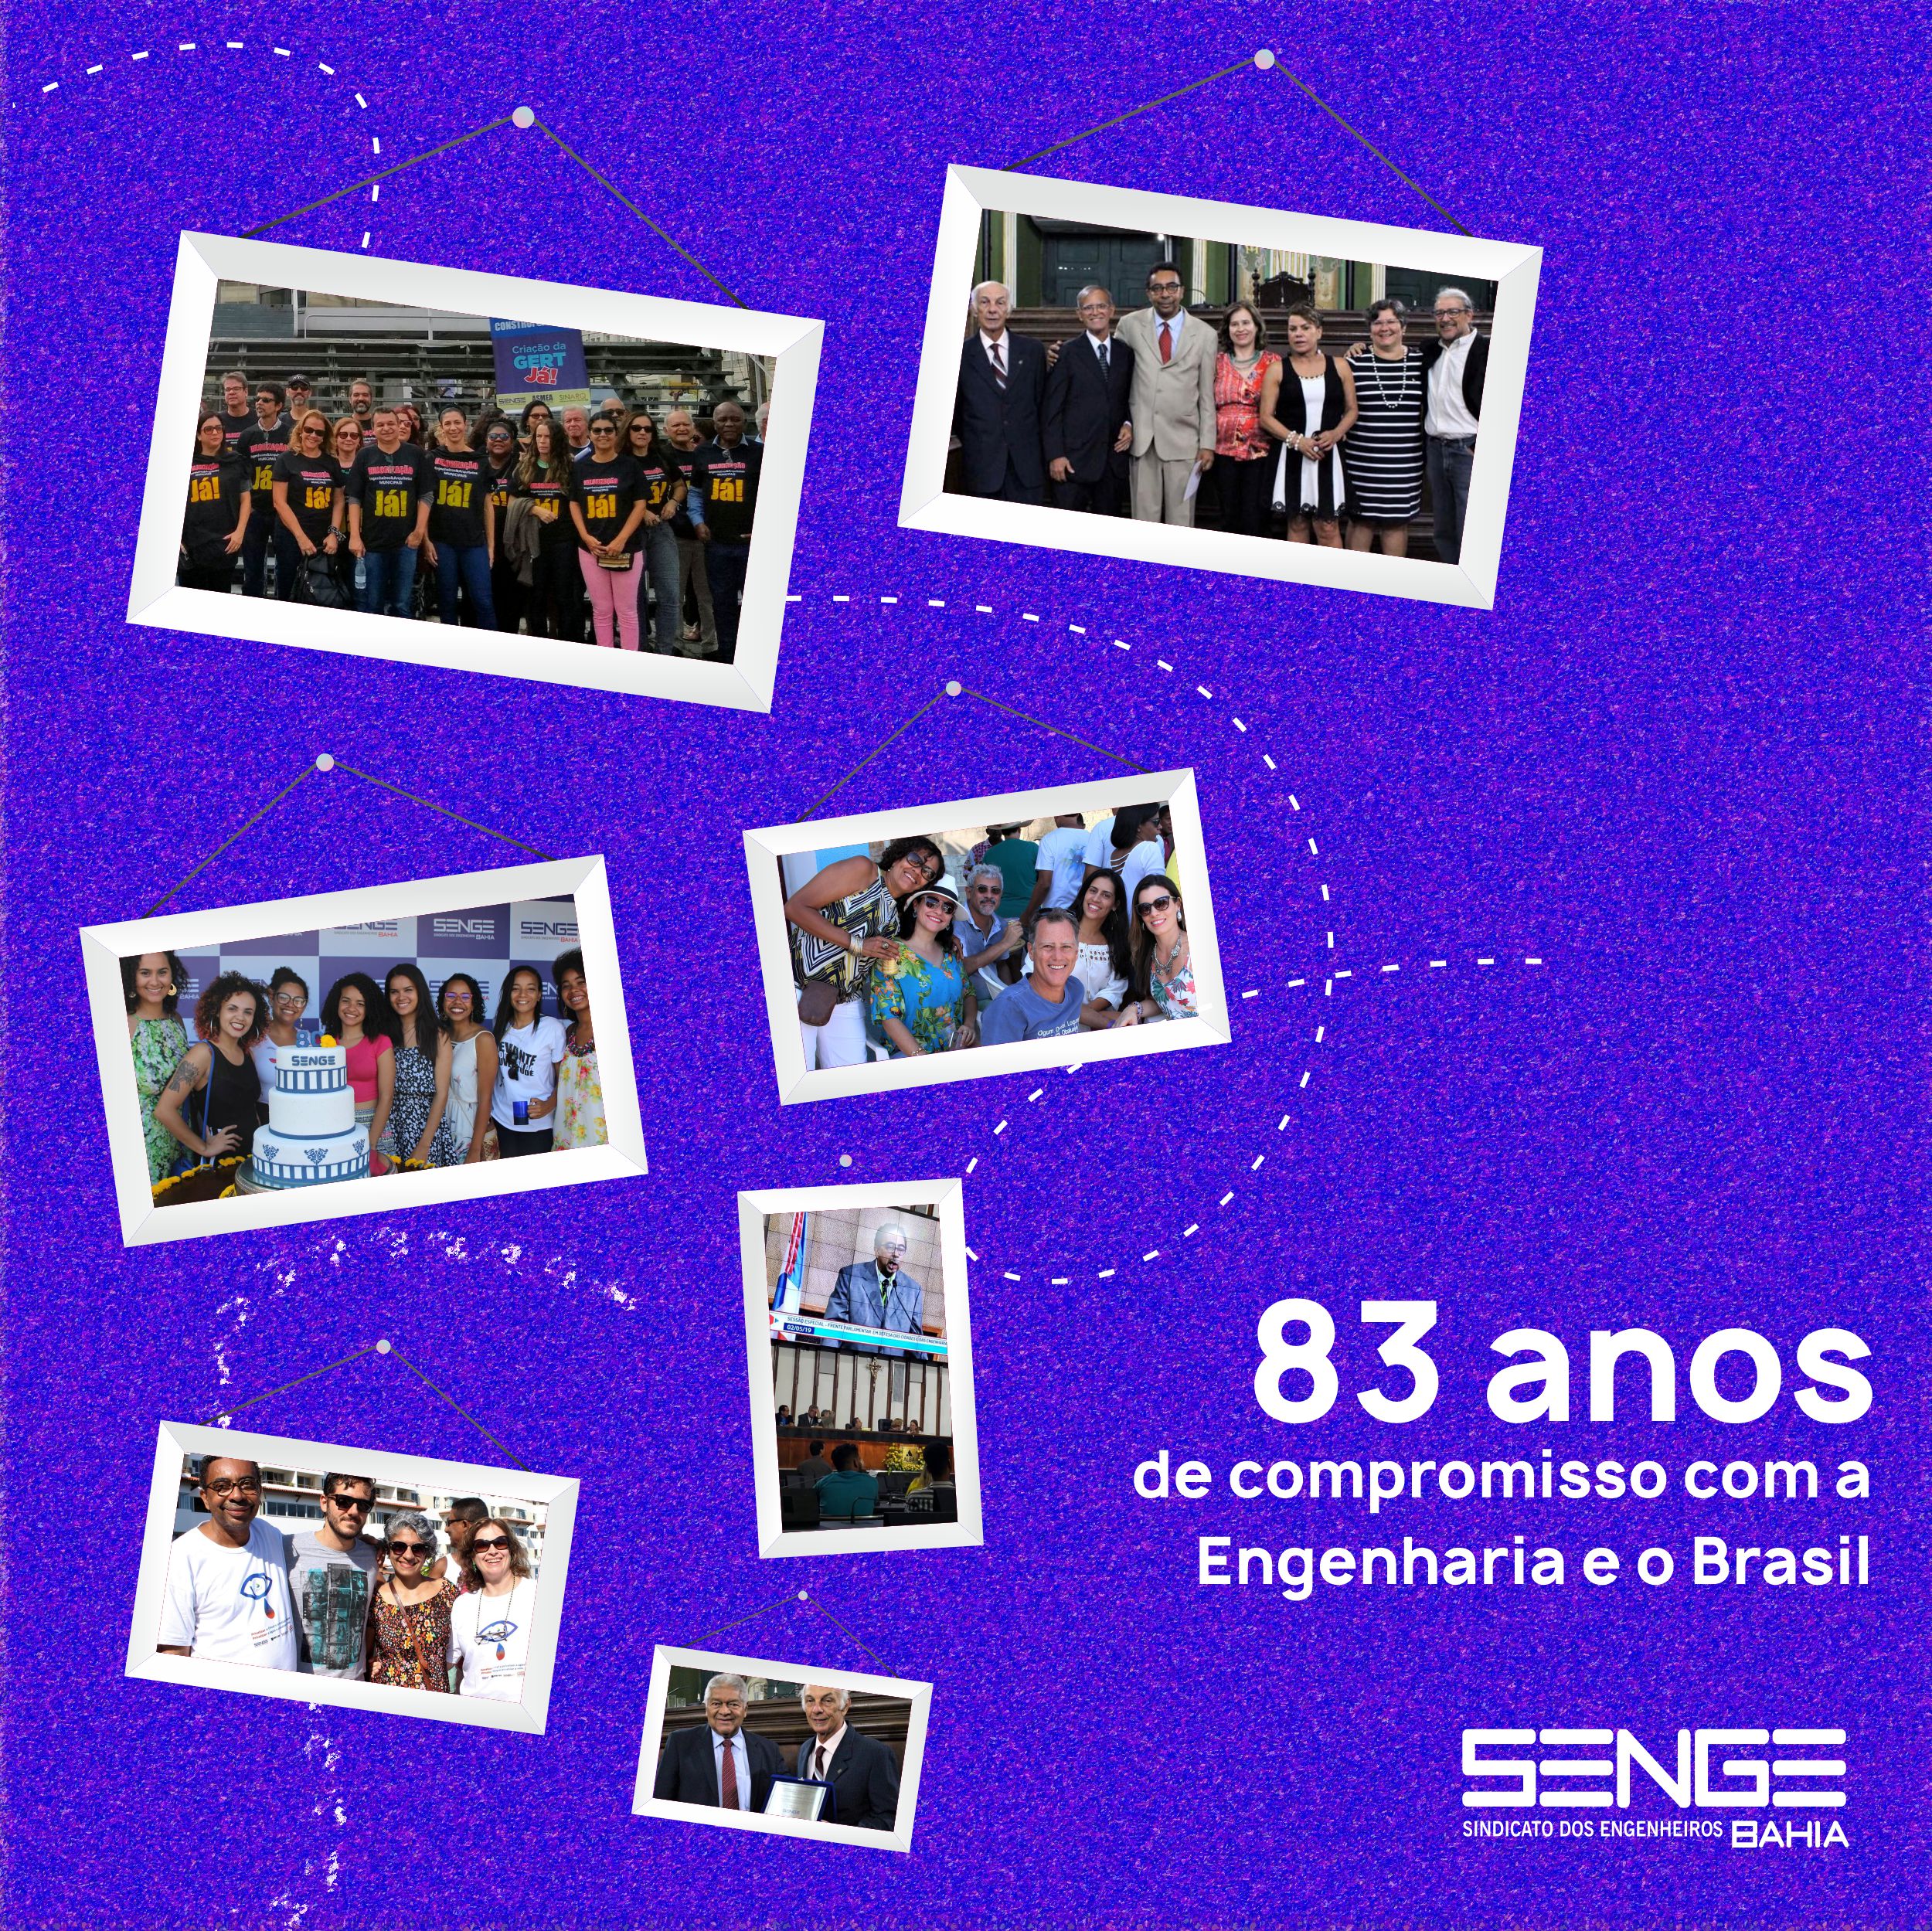 Senge-Ba, 83 anos de compromisso com a Engenharia e com o Brasil